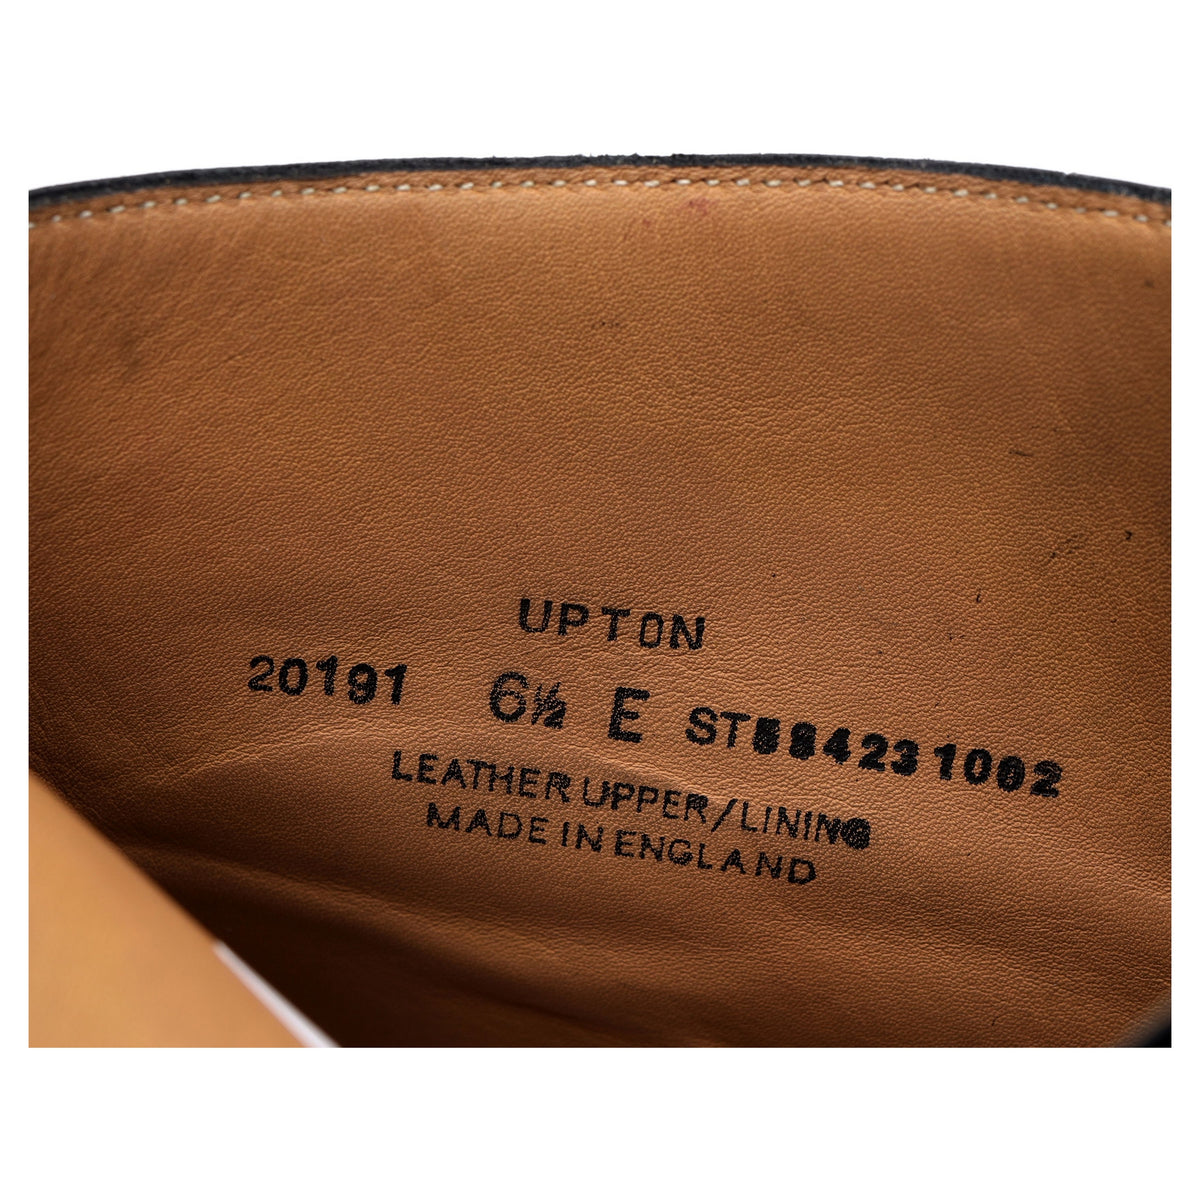 &#39;Upton&#39; Black Leather Chukka Boots UK 6.5 E